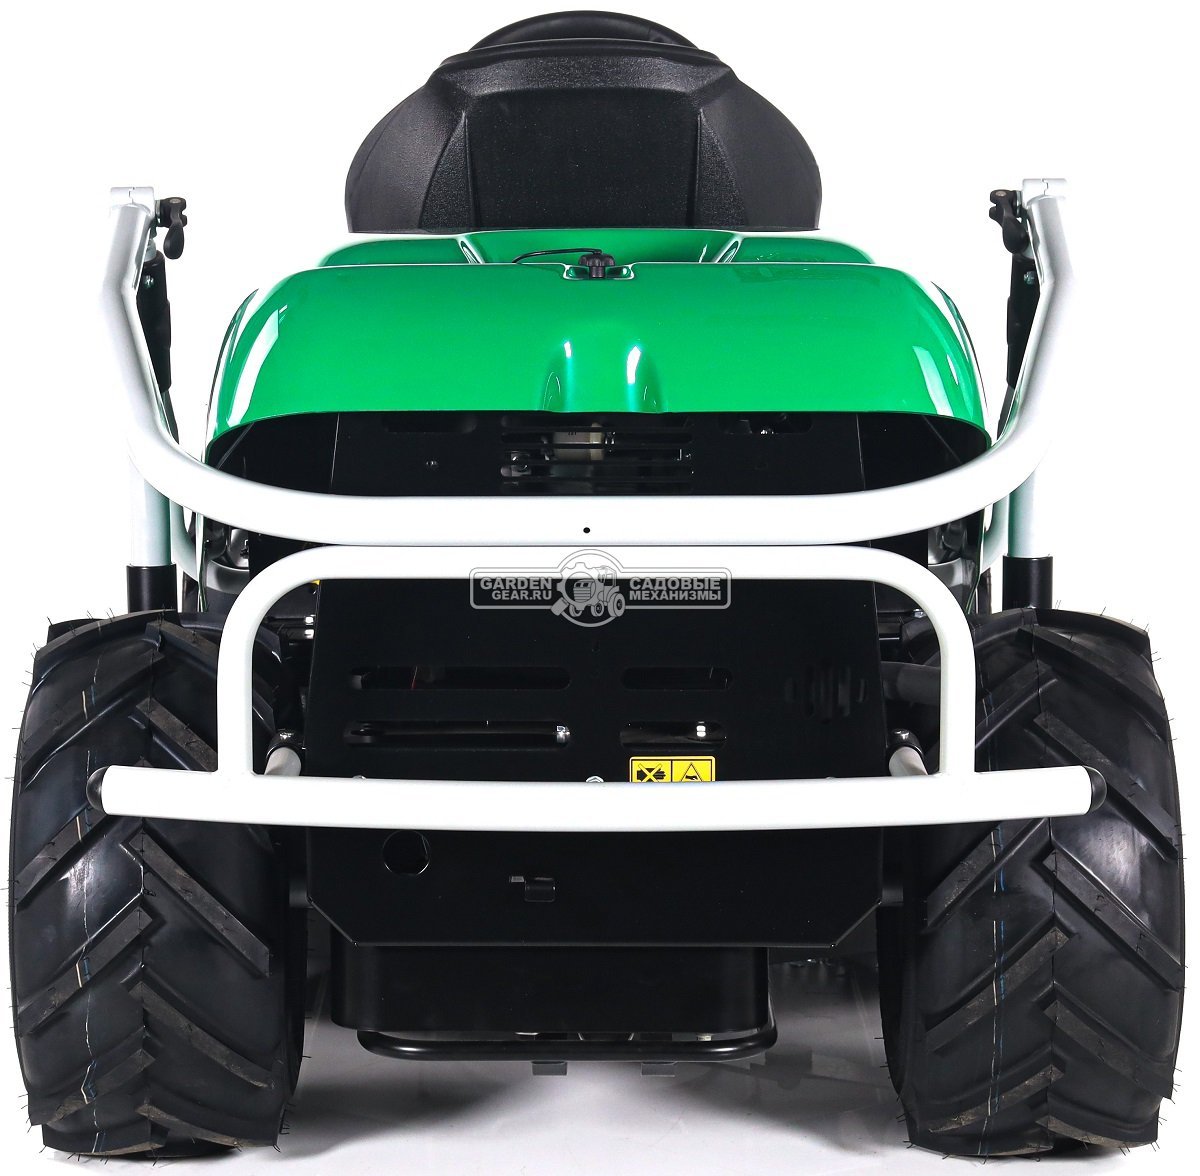 Садовый трактор для высокой травы и работы на склонах Caiman Croso 2WD 97D2C (CZE, Caiman V-Twin, 708 куб.см., 92 см, дифференциал, 331 кг.)